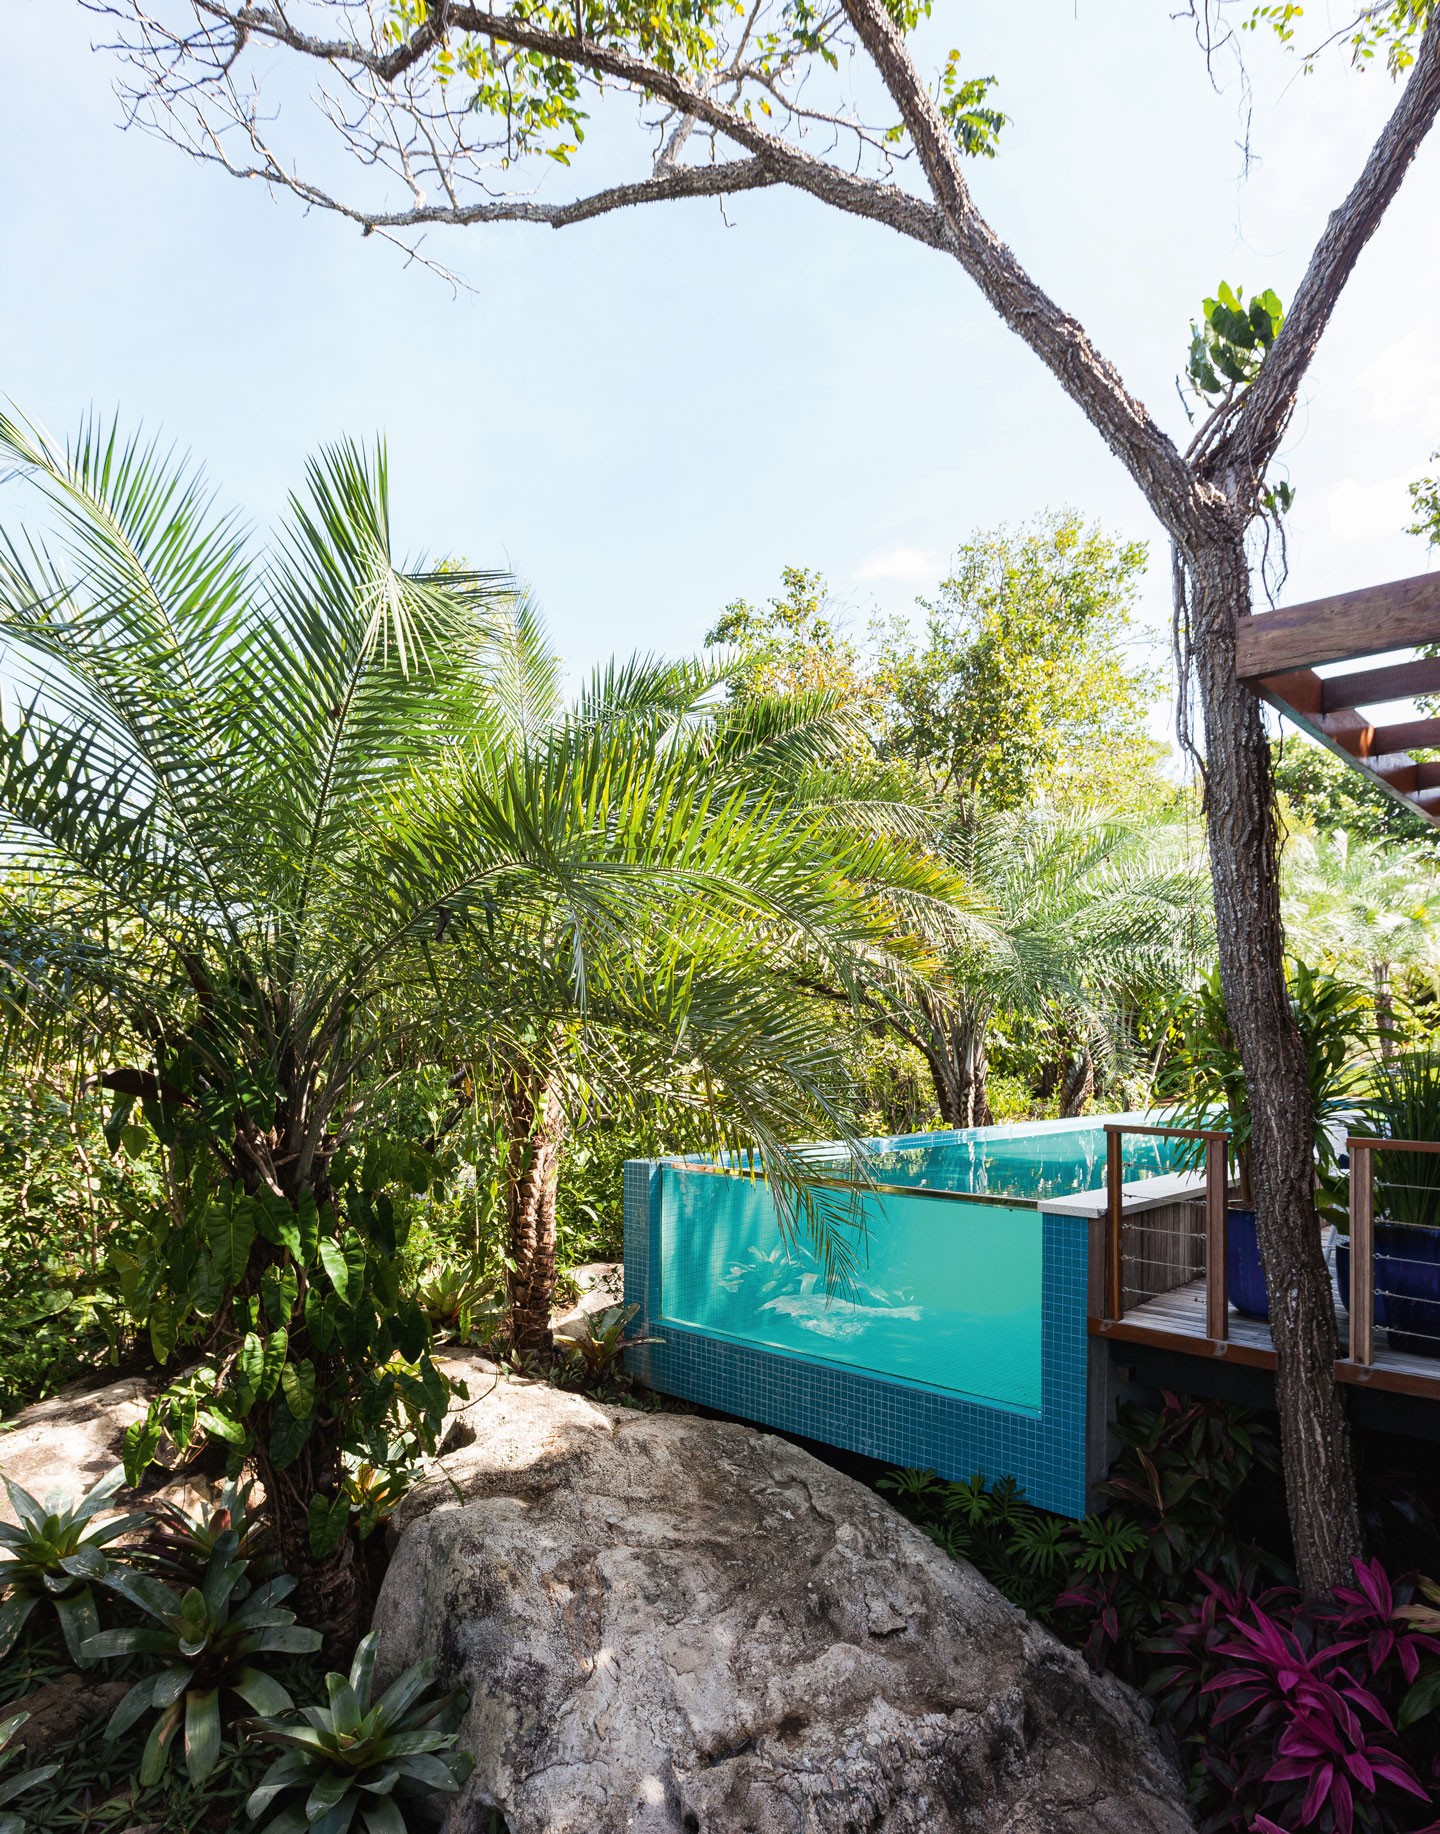 Casa de férias na Bahia é abraçada pela natureza do entorno (Foto: Tuca Reinés/divulgação)